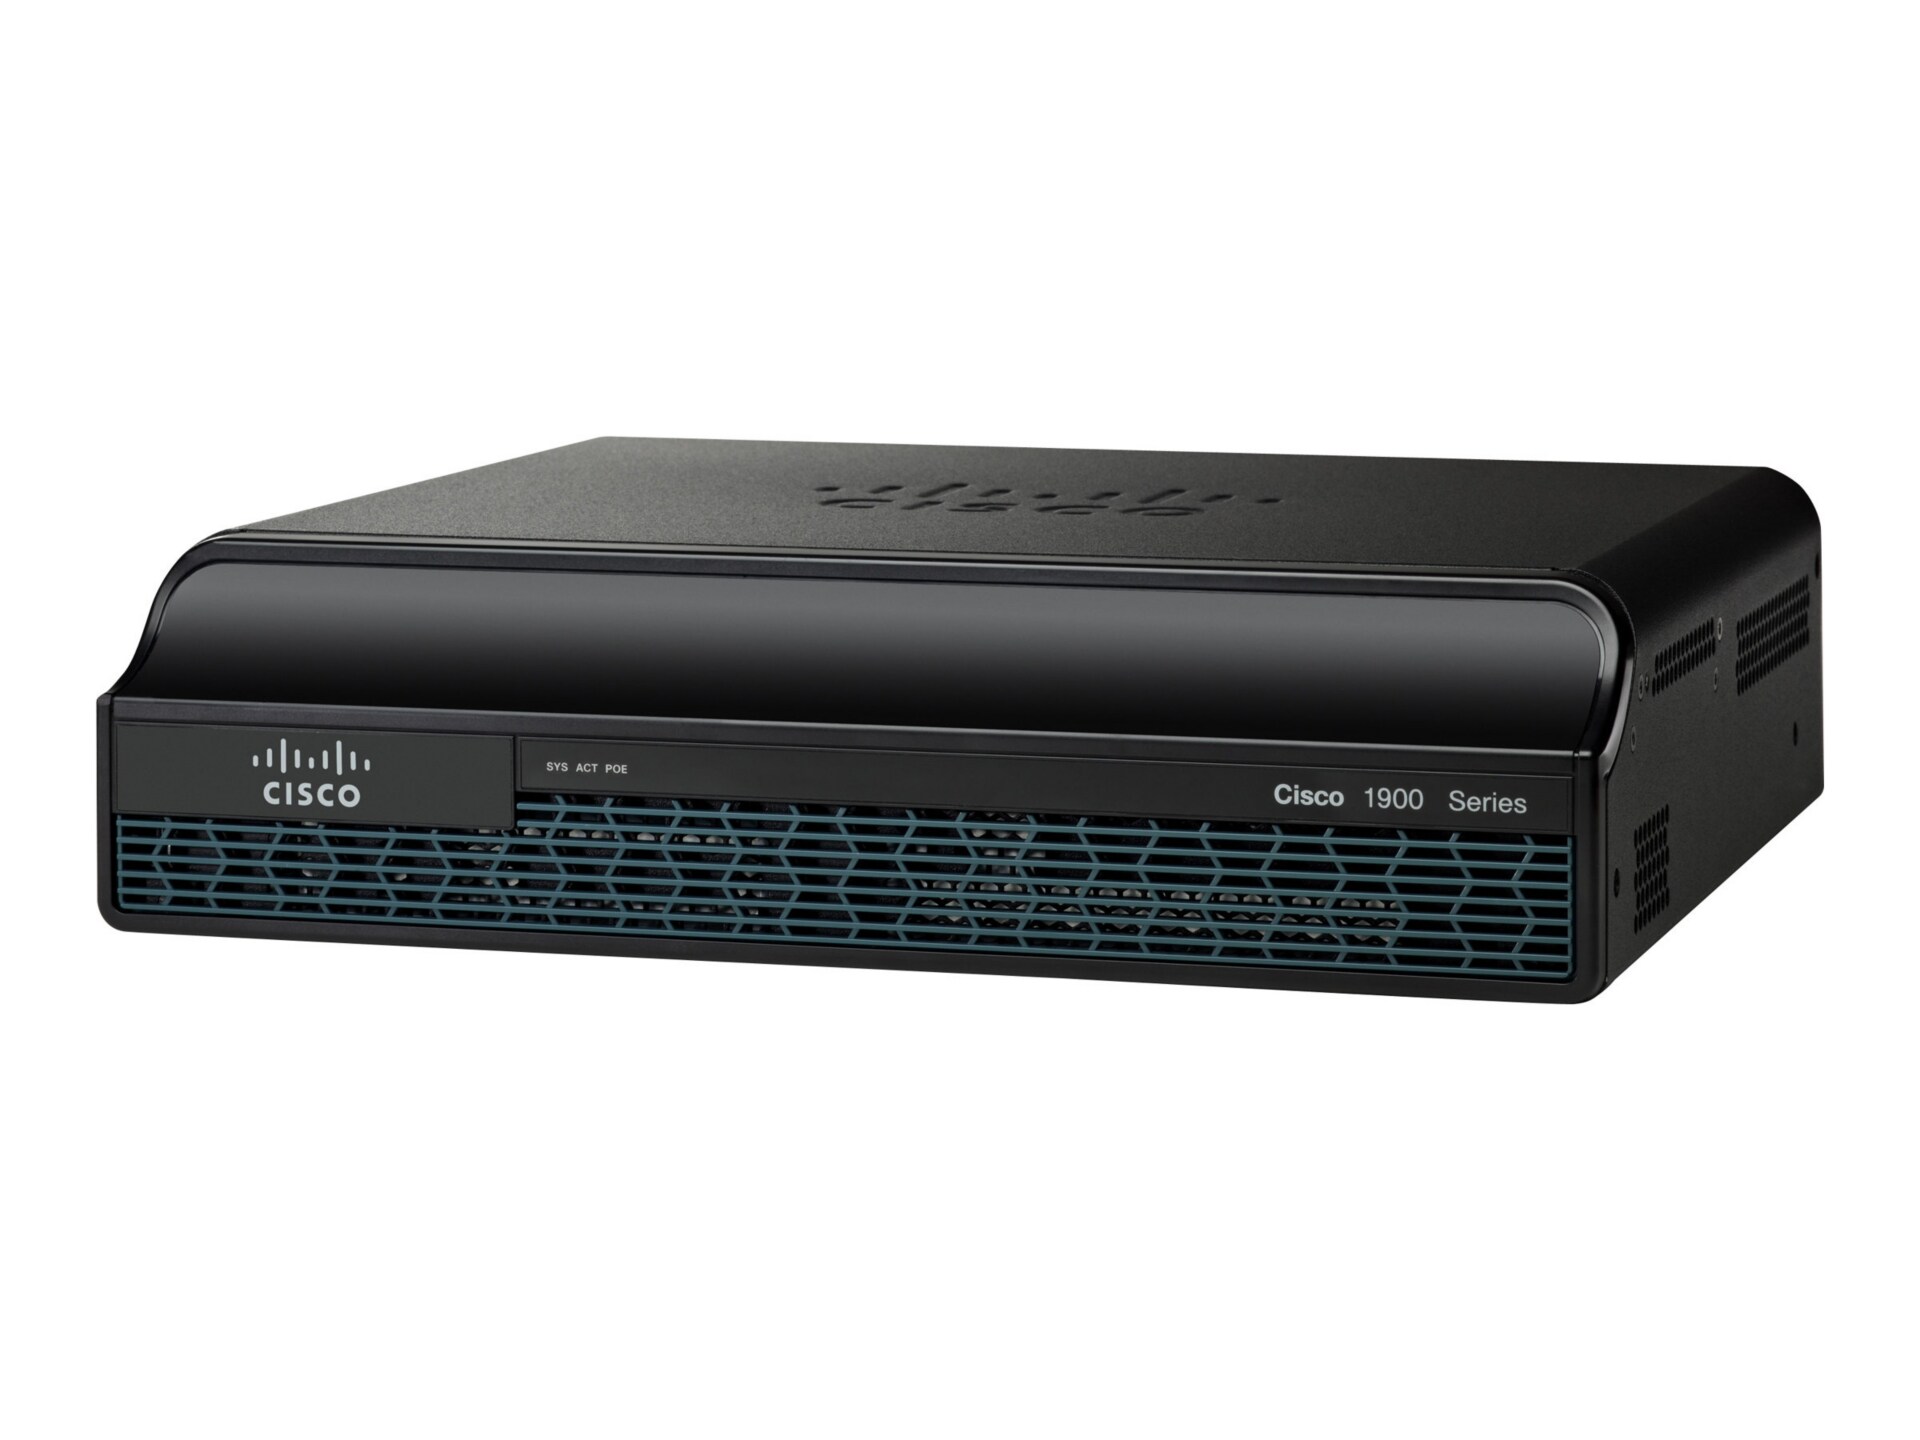 Cisco 1941 - wireless router - 802.11a/b/g/n (draft 2.0) - desktop, rack-mo